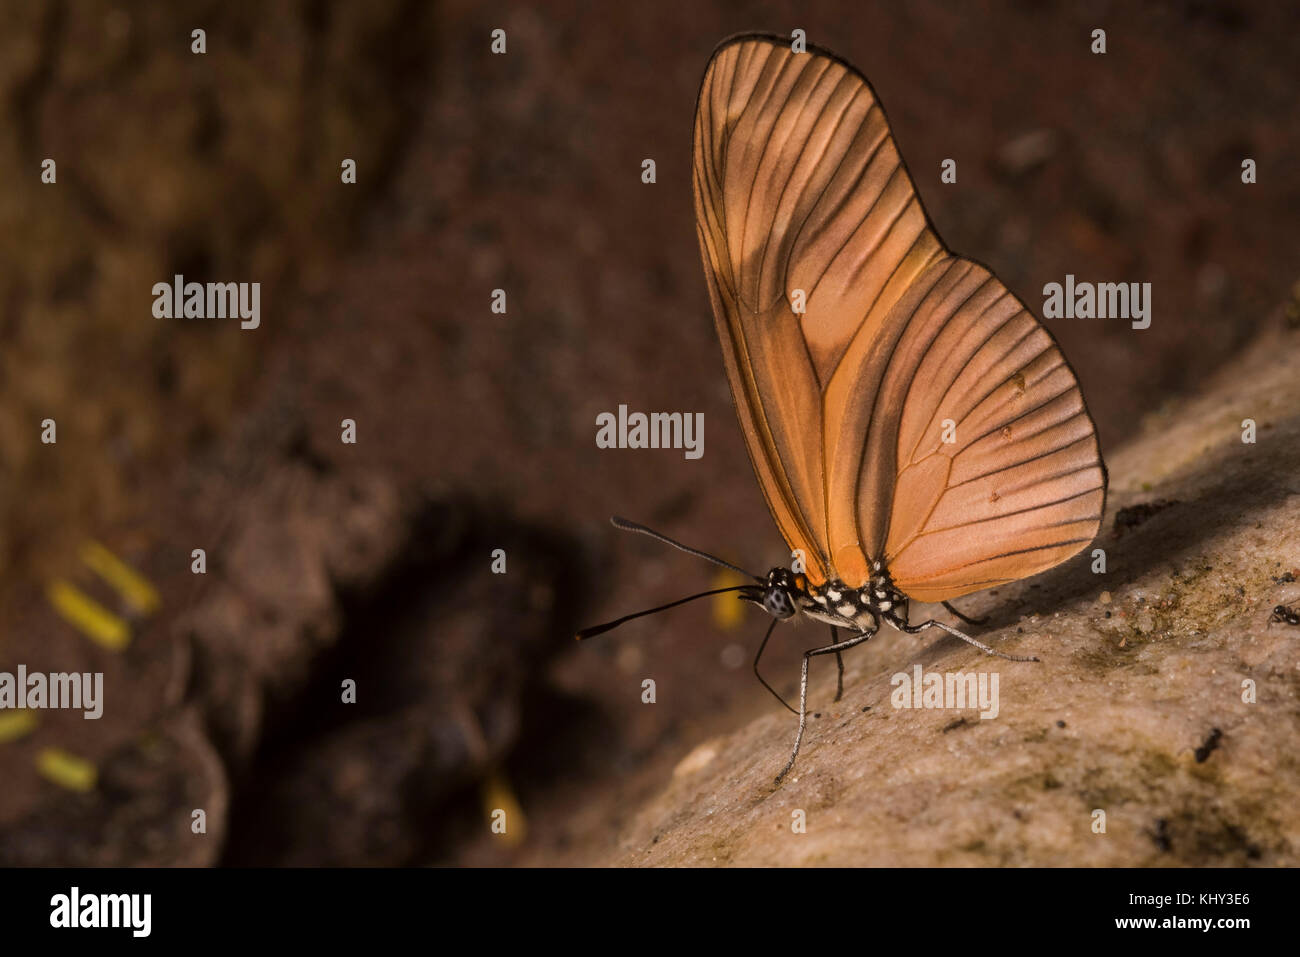 Probabilmente una specie di Heliconius, un gruppo di farfalle ampiamente studiato in relazione alla mimica e evoluzione. Foto Stock